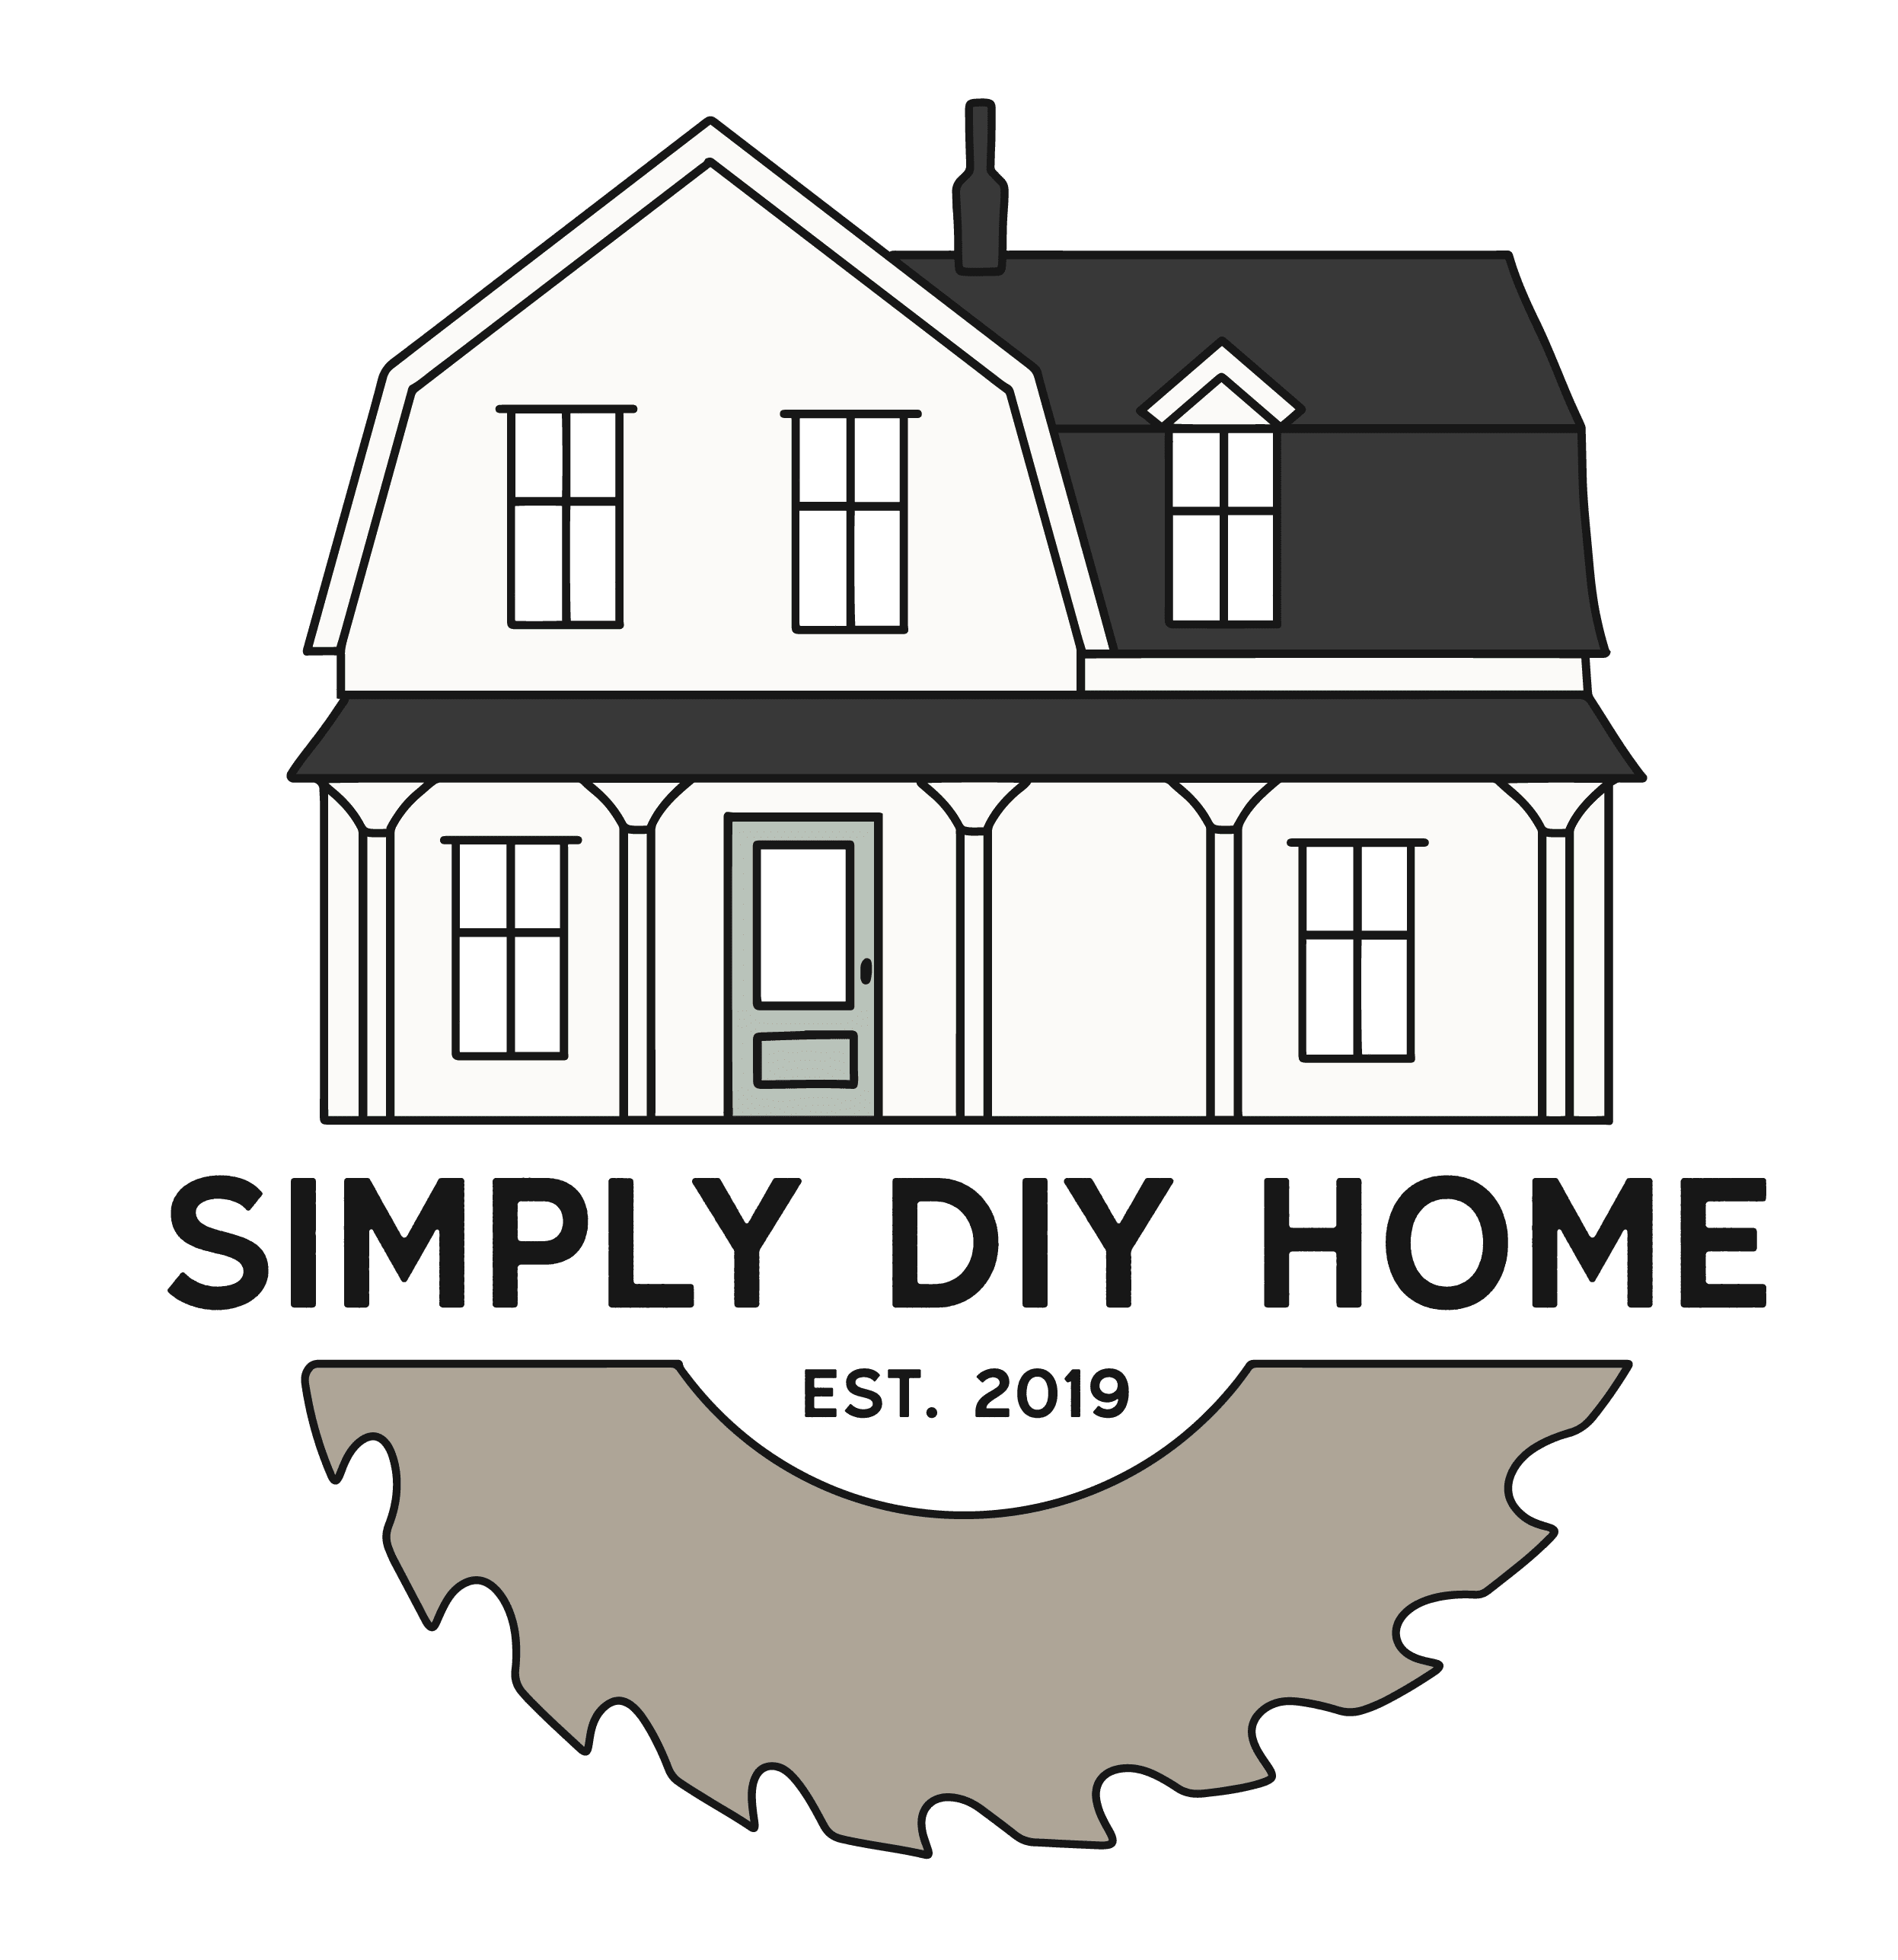 Simply diy home logo